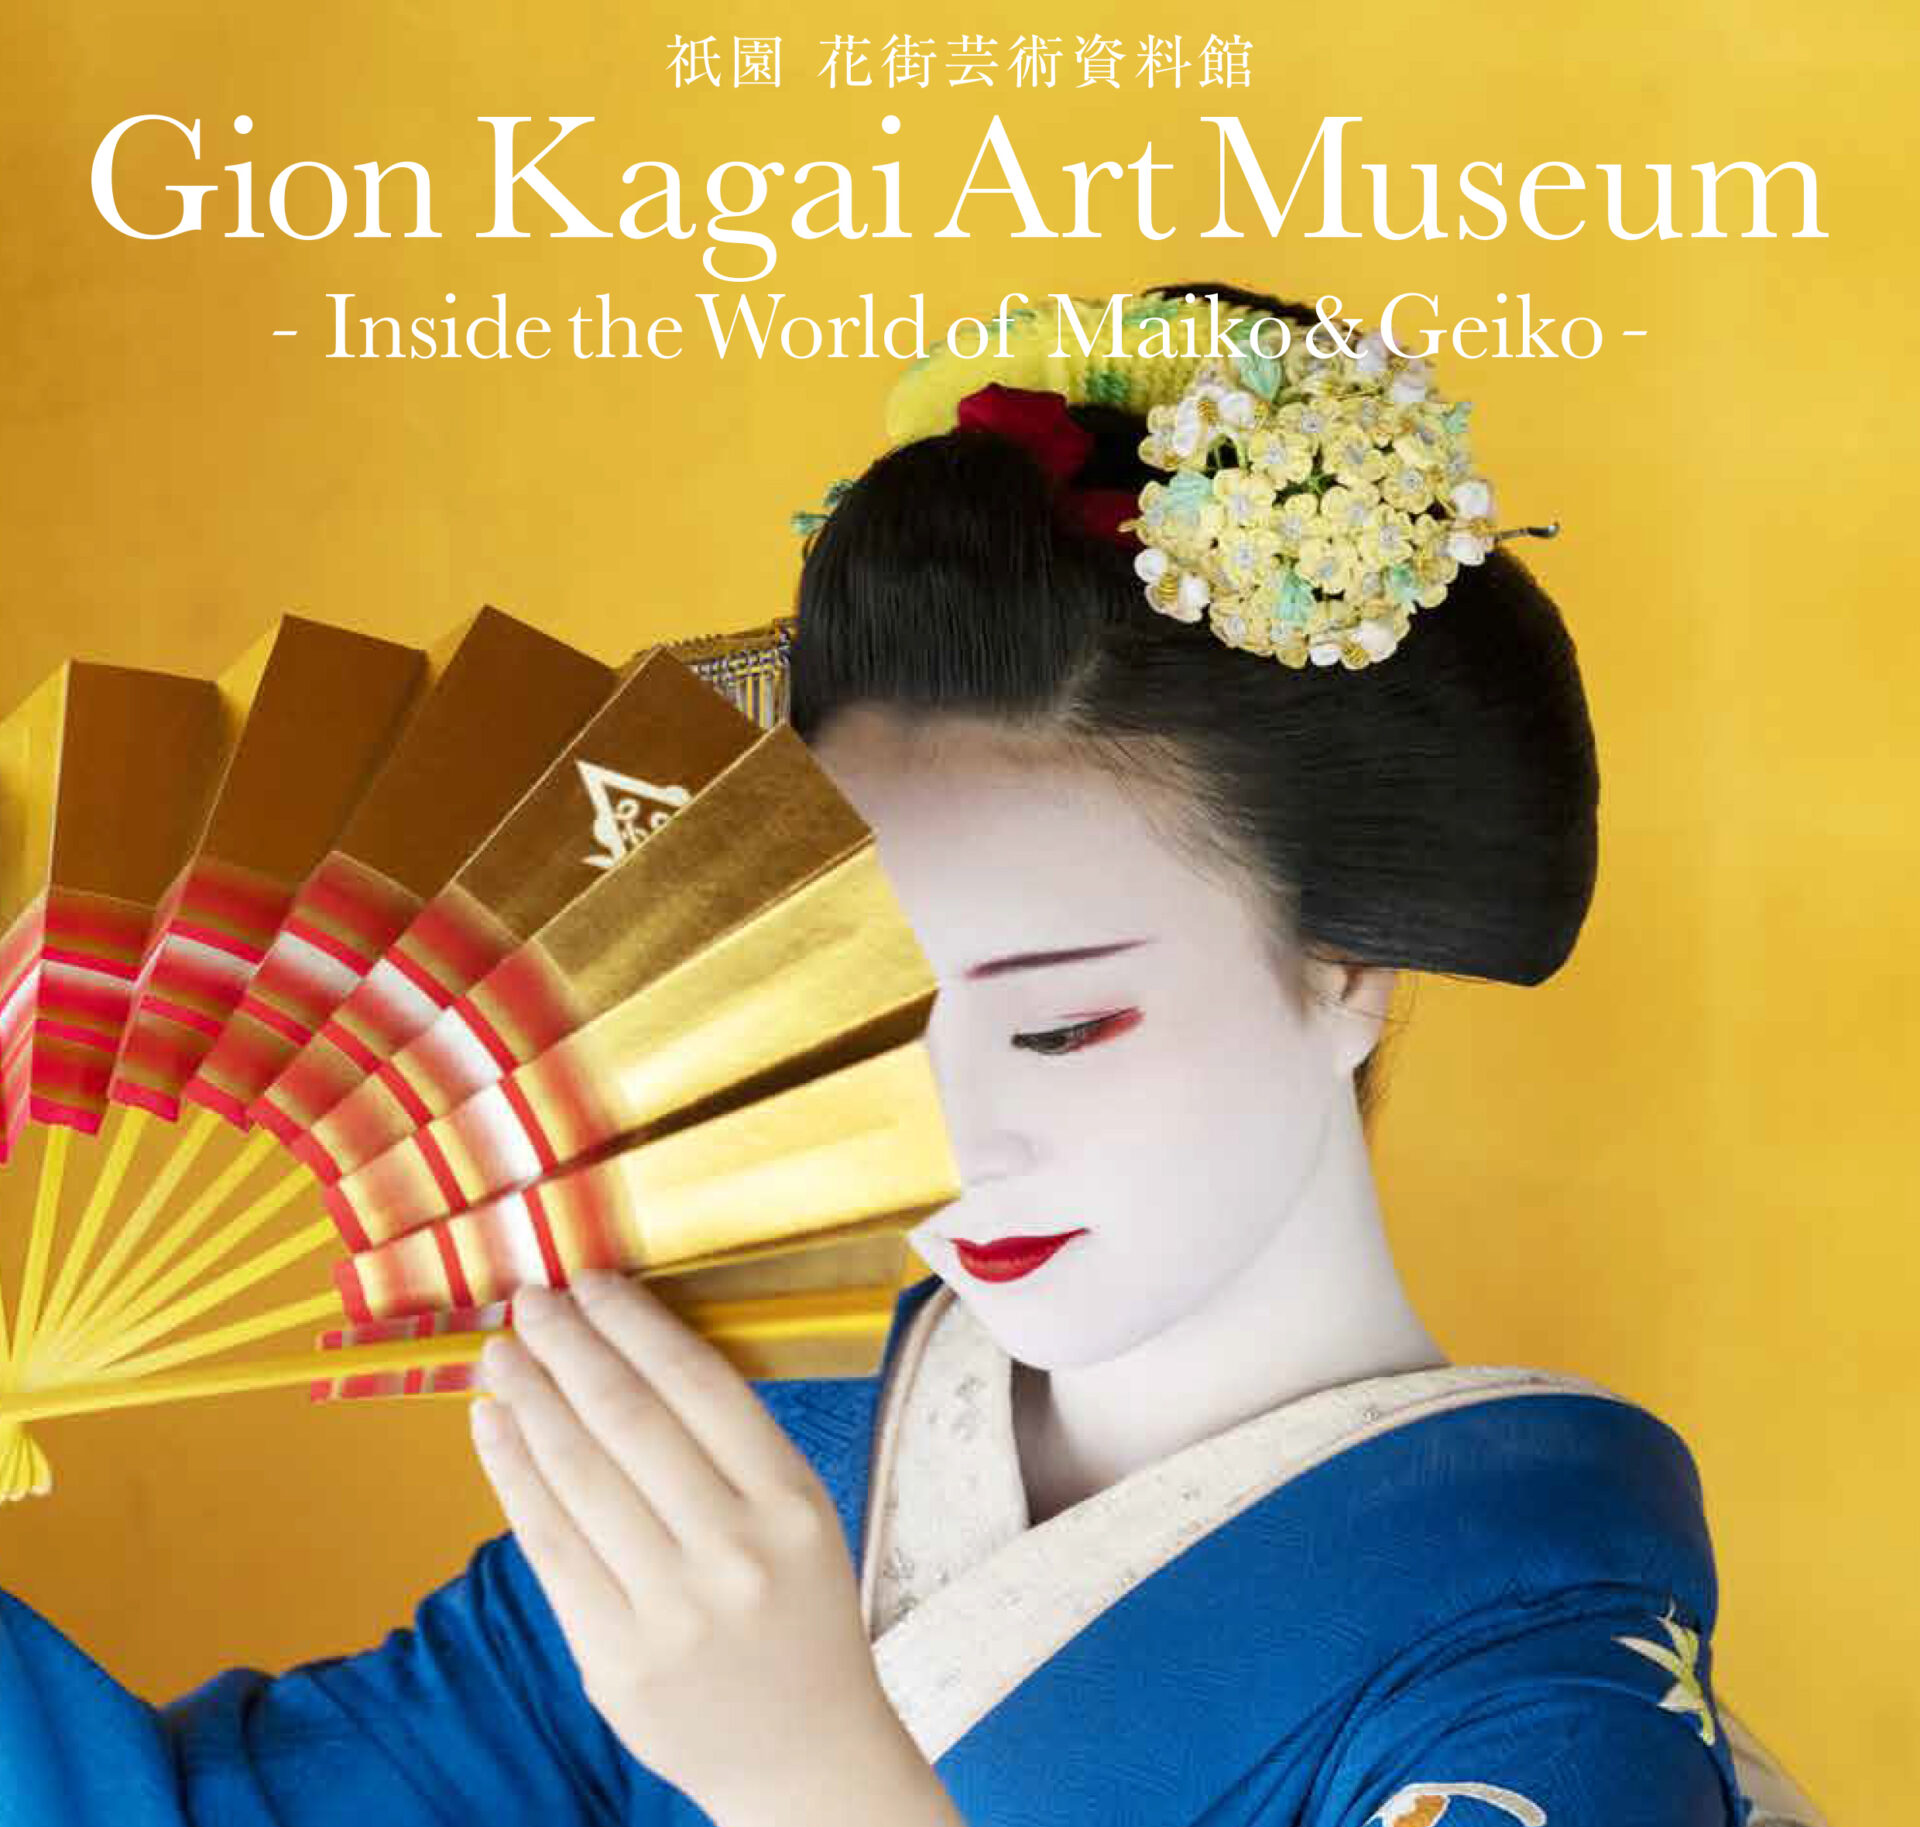 芸妓さん舞妓さんによる京舞披露と祇園 花街芸術資料館の見学 